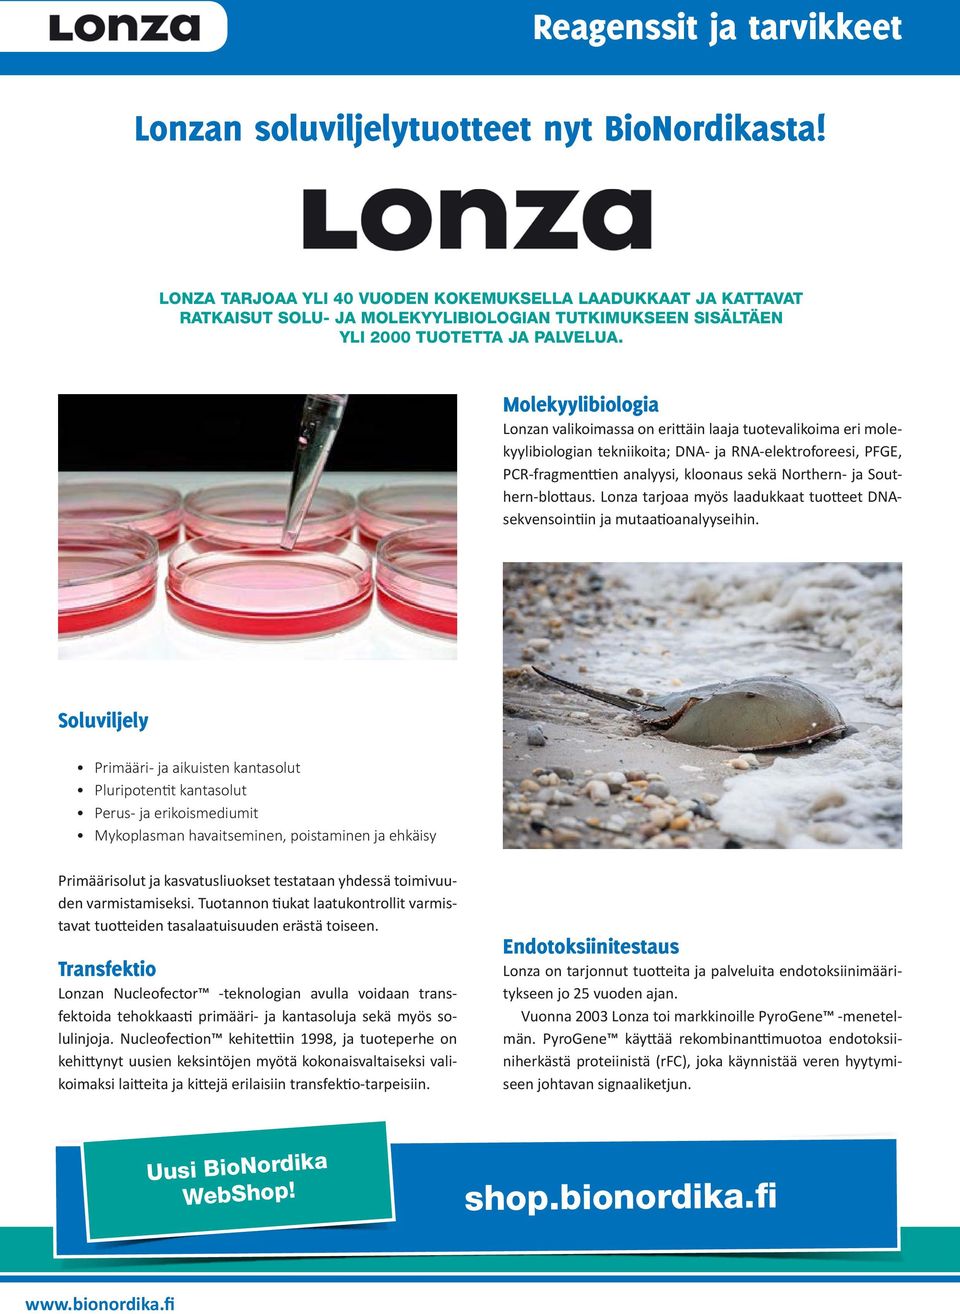 Molekyylibiologia Lonzan valikoimassa on erittäin laaja tuotevalikoima eri molekyylibiologian tekniikoita; DNA- ja RNA-elektroforeesi, PFGE, PCR-fragmenttien analyysi, kloonaus sekä Northern- ja